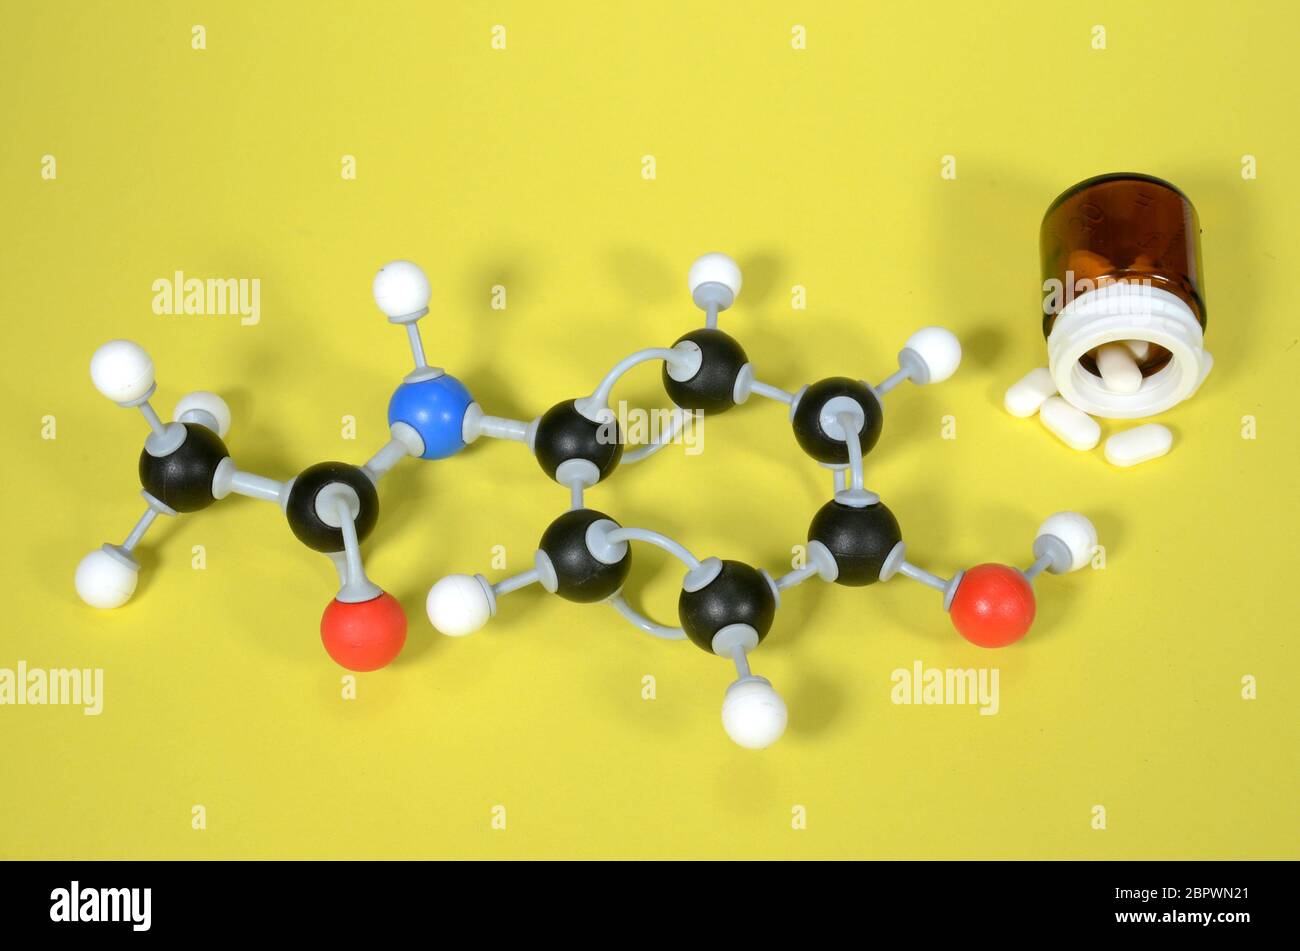 Modello molecolare di Paracetamol, il principio attivo in molti antidolorifici. Il bianco è idrogeno, il nero è carbonio, il rosso è ossigeno e il blu è azoto. Foto Stock